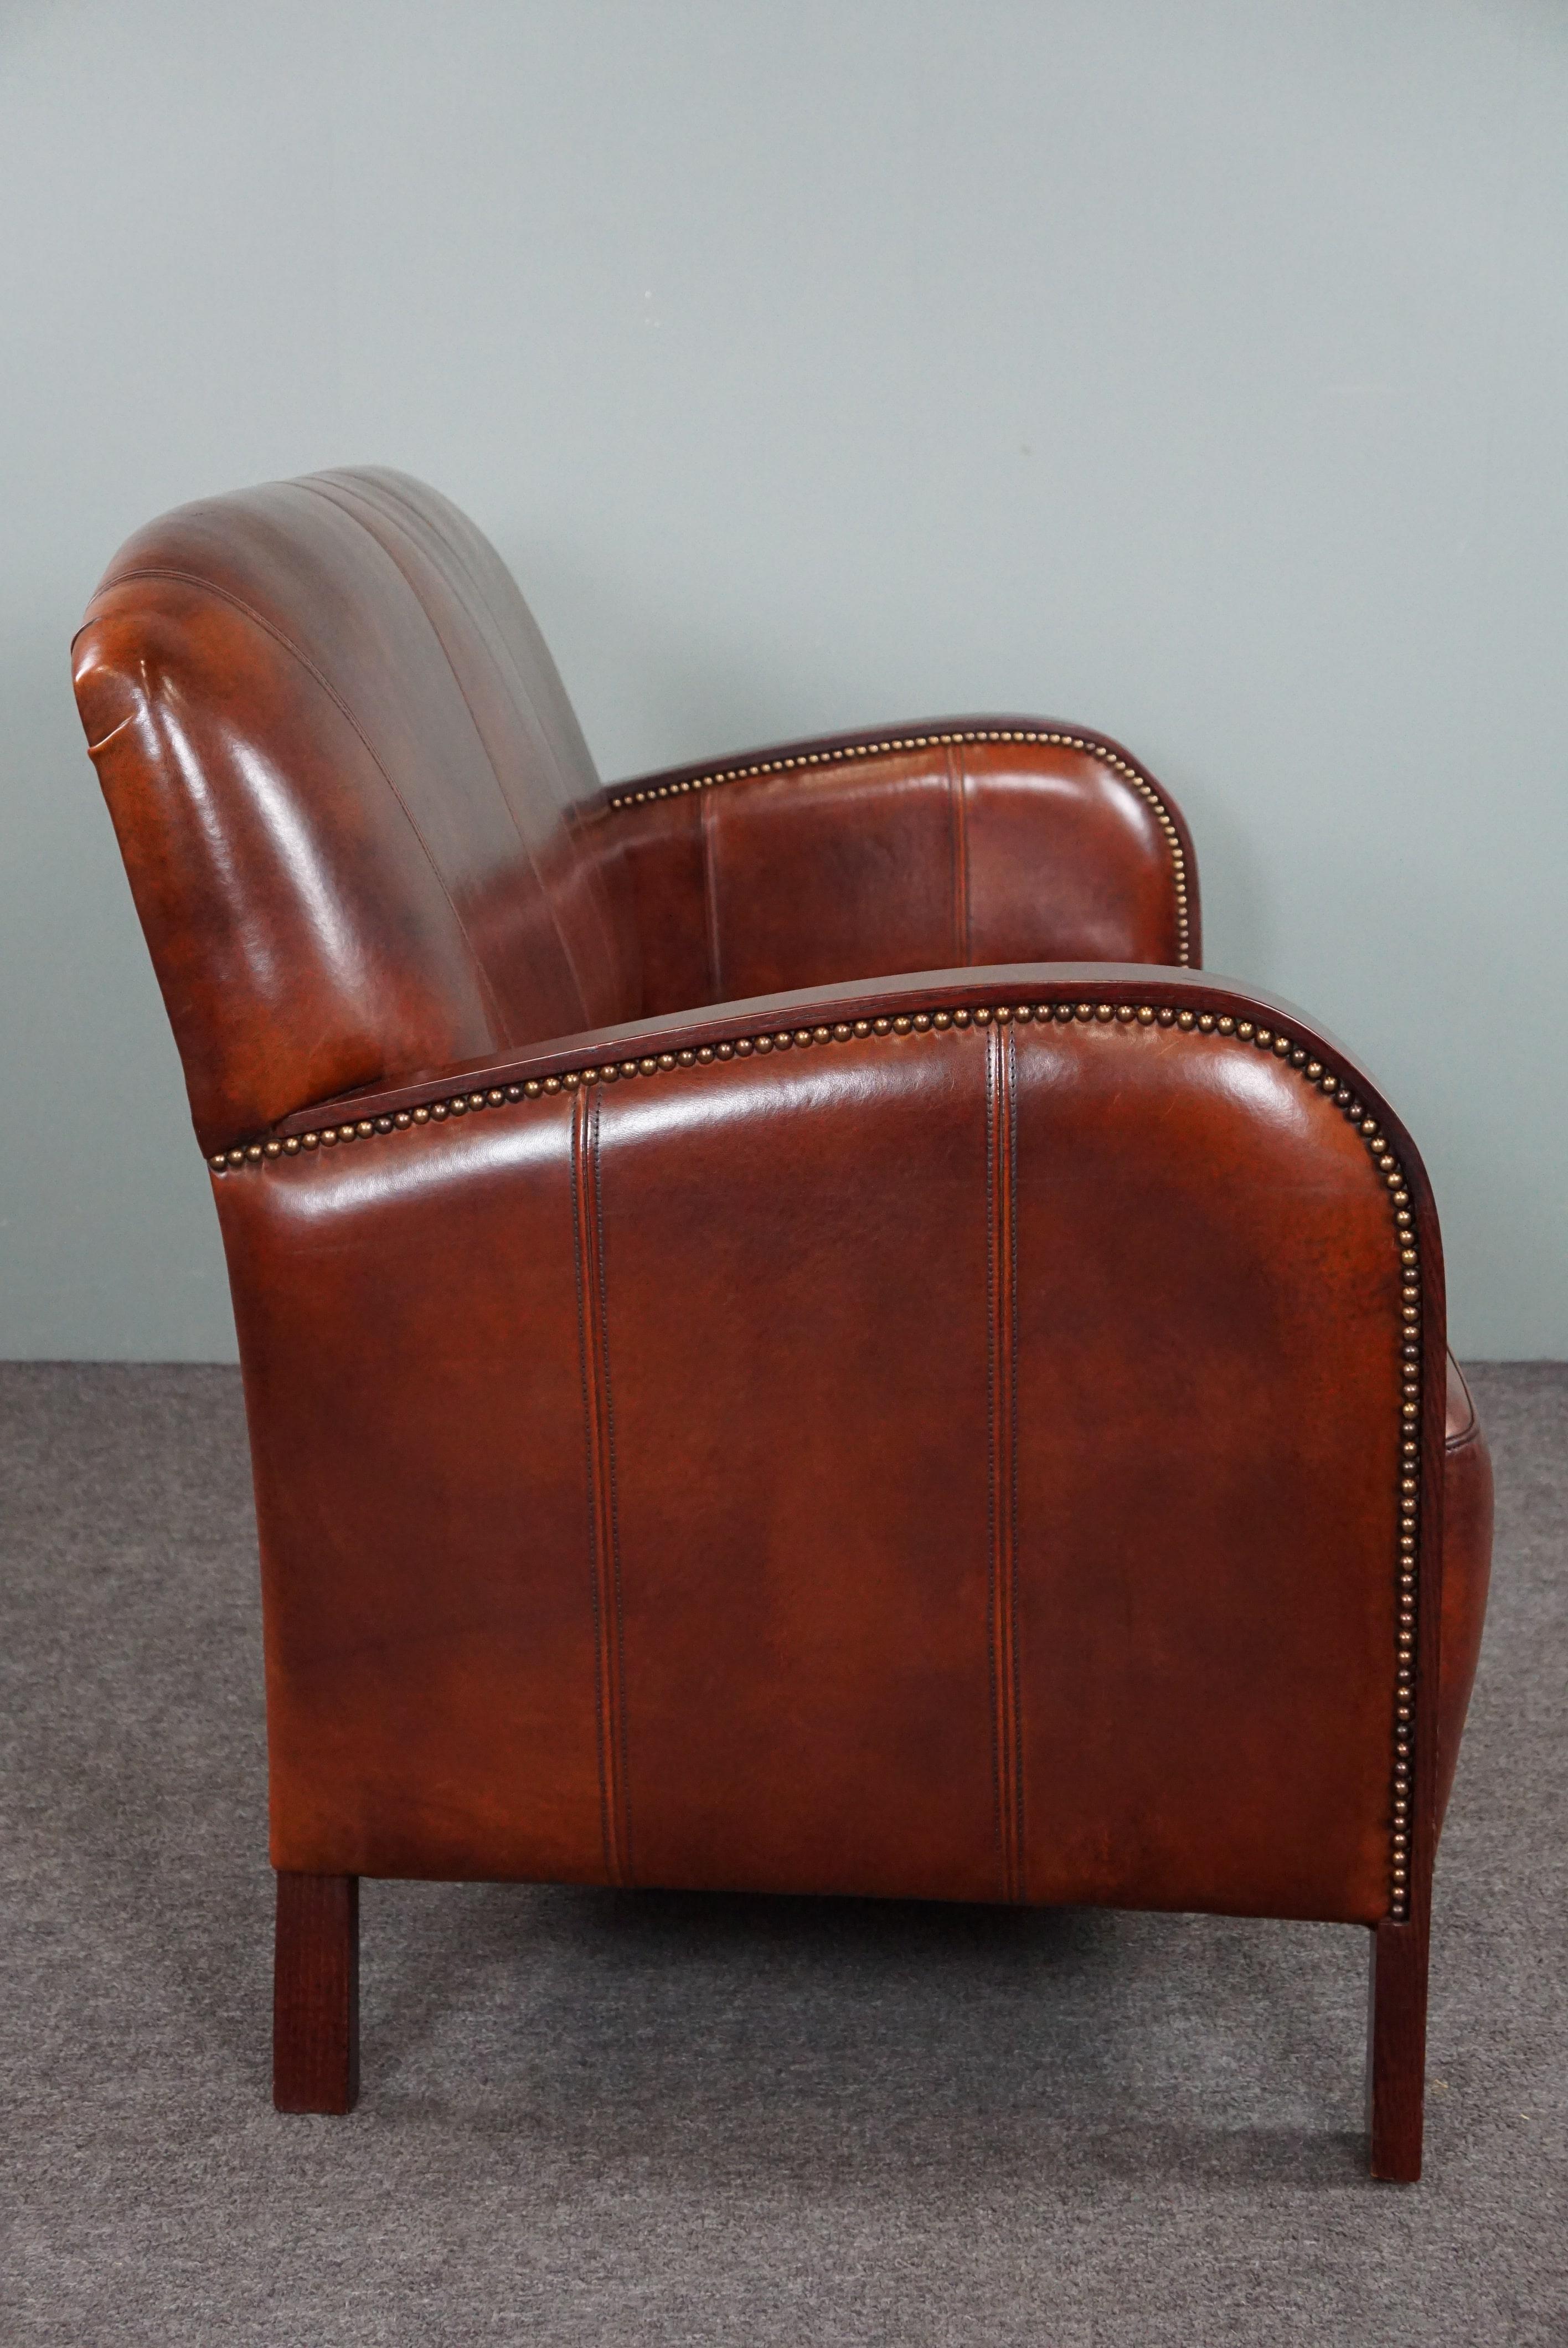 Dieses bequeme Art Deco 2-Sitzer Sofa aus Schafsleder hat eine schöne dunkle Farbe und schöne runde Armlehnen aus Holz. Darüber hinaus besticht dieses Sofa durch sein auffälliges Design und die schön geformte Rückenlehne.

NB:
Die in unserem